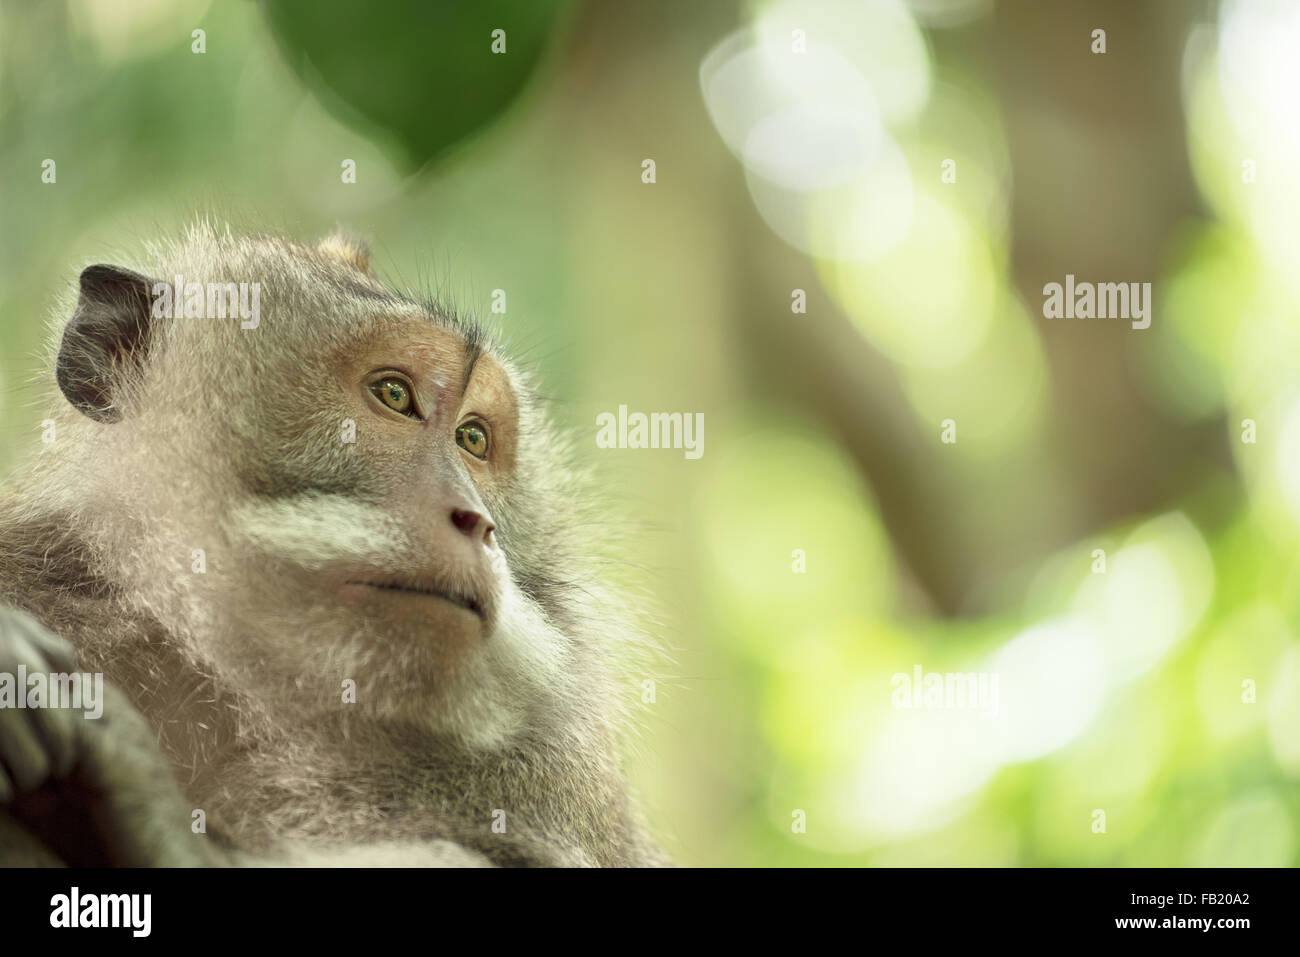 Retrato de cara mono salvaje en su hábitat natural. La conservación de la vida silvestre y la campaña de los derechos de los animales. Foto de stock